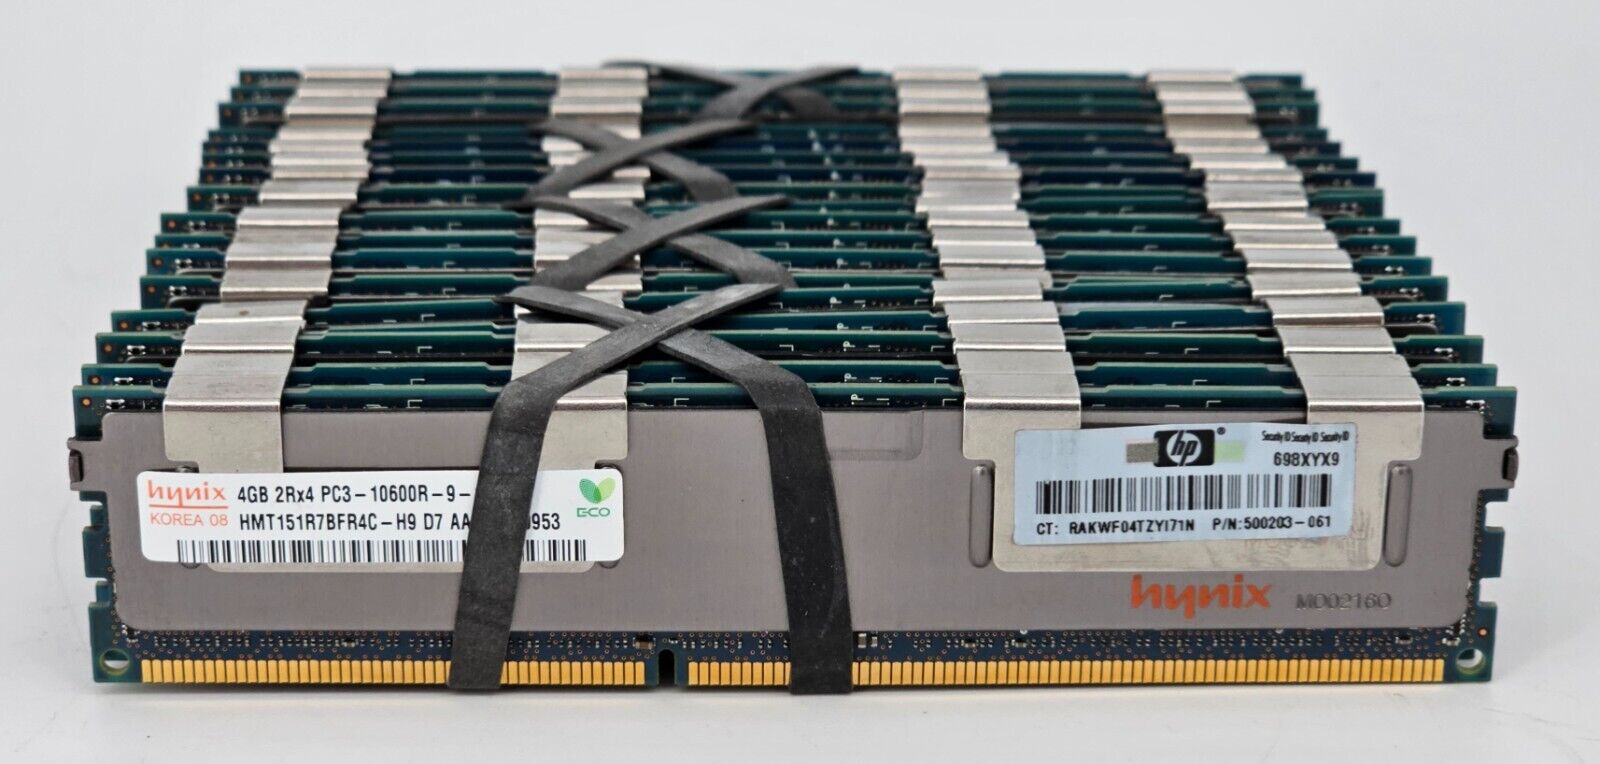 LOT OF 18 - 4GB 2Rx4 PC3-10600R DDR3 1333MHz SERVER RAM Hynix HMT151R7BFR4C-H9